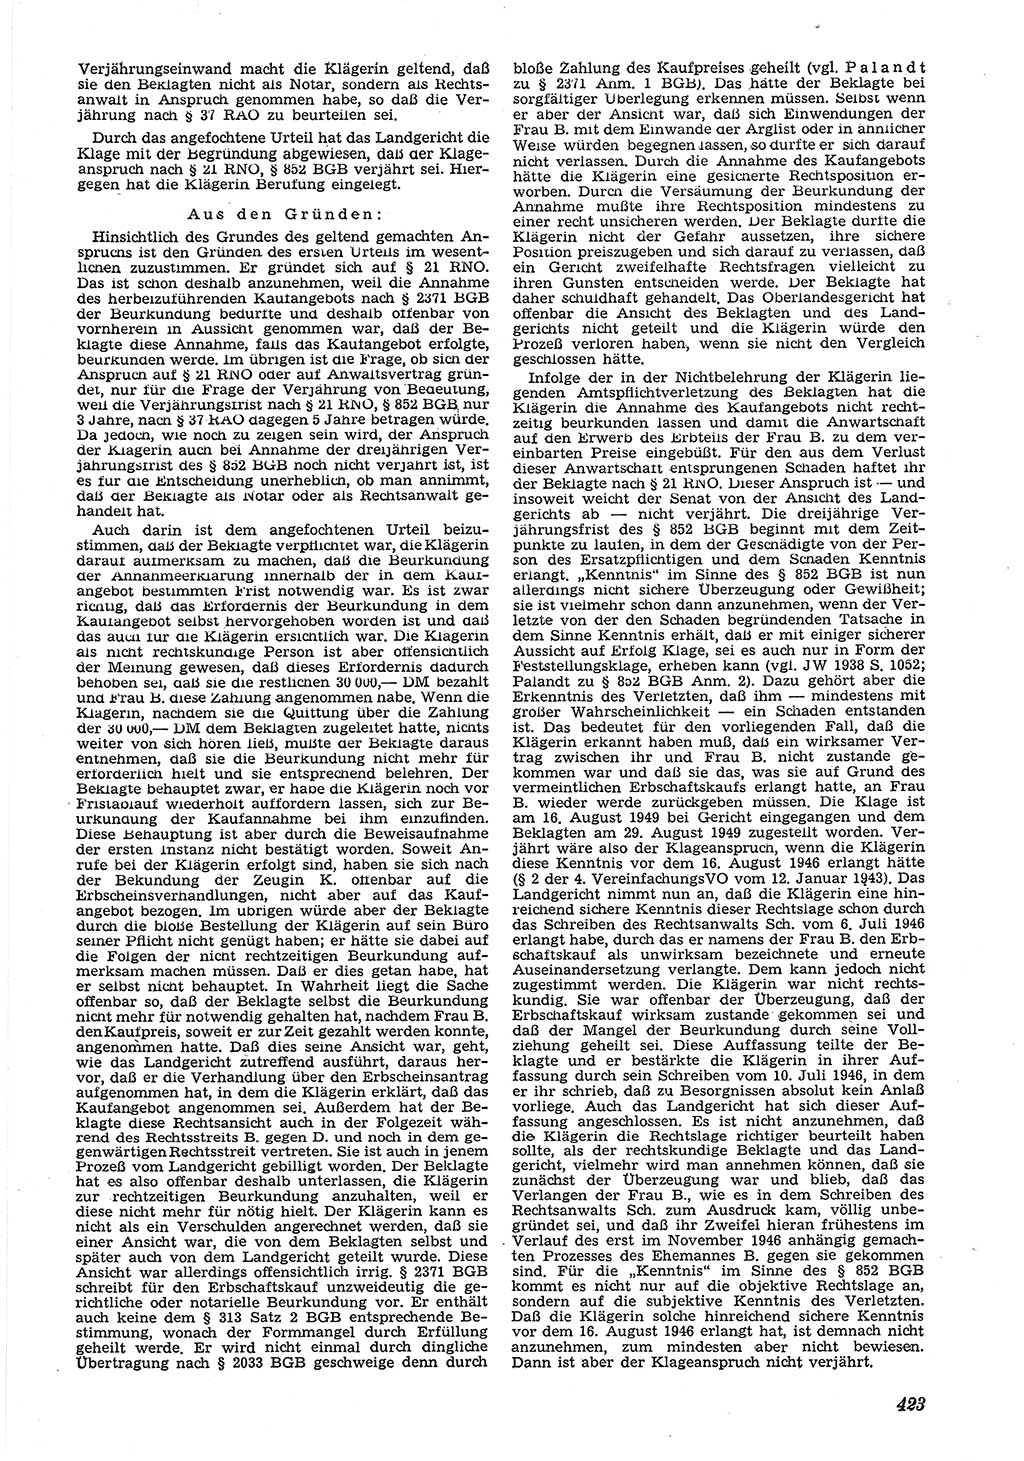 Neue Justiz (NJ), Zeitschrift für Recht und Rechtswissenschaft [Deutsche Demokratische Republik (DDR)], 5. Jahrgang 1951, Seite 423 (NJ DDR 1951, S. 423)